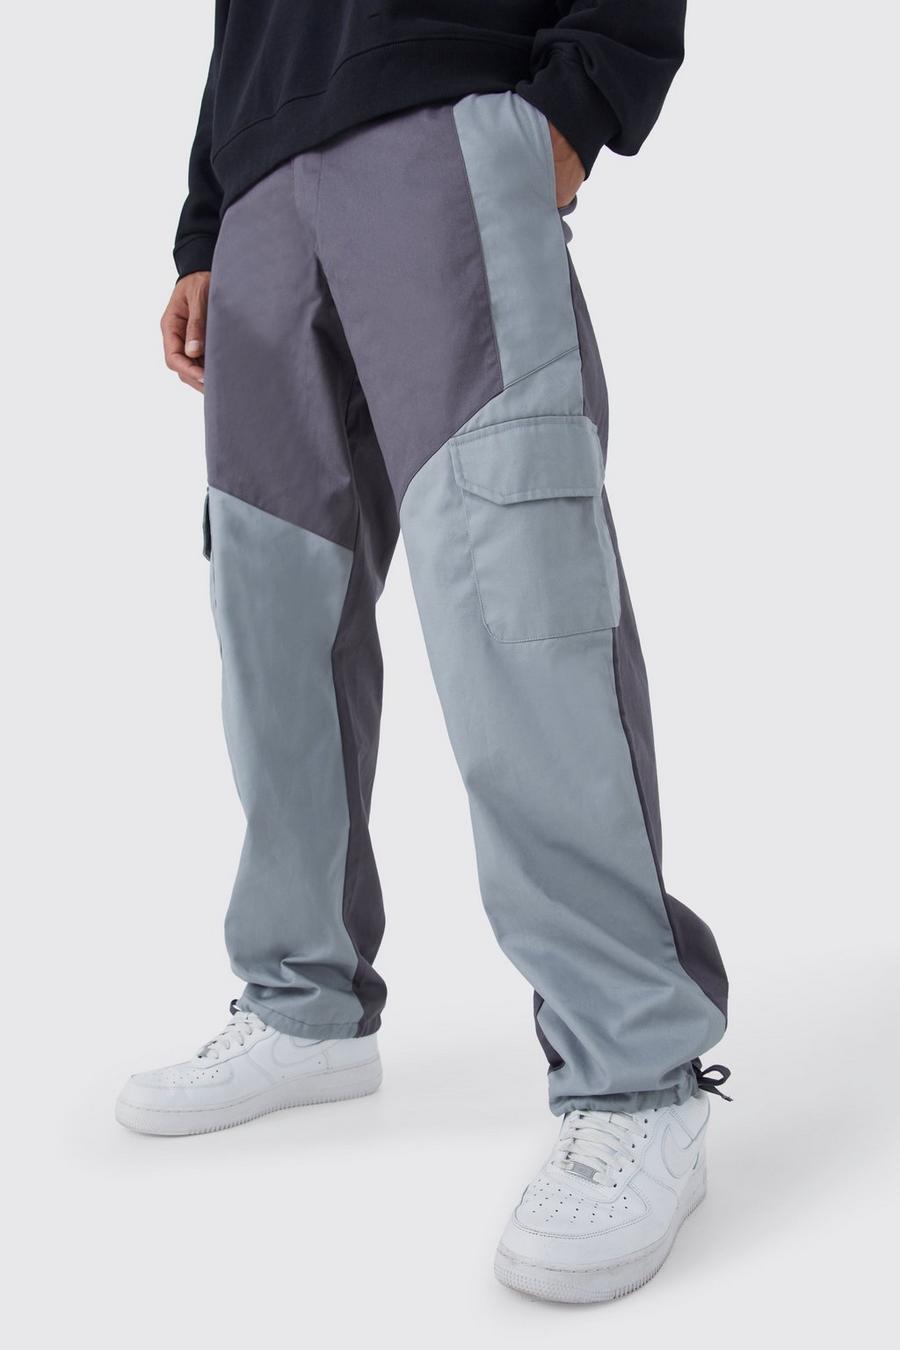 Pantaloni Cargo Tall Slim Fit a blocchi di colore con etichetta in tessuto, Charcoal